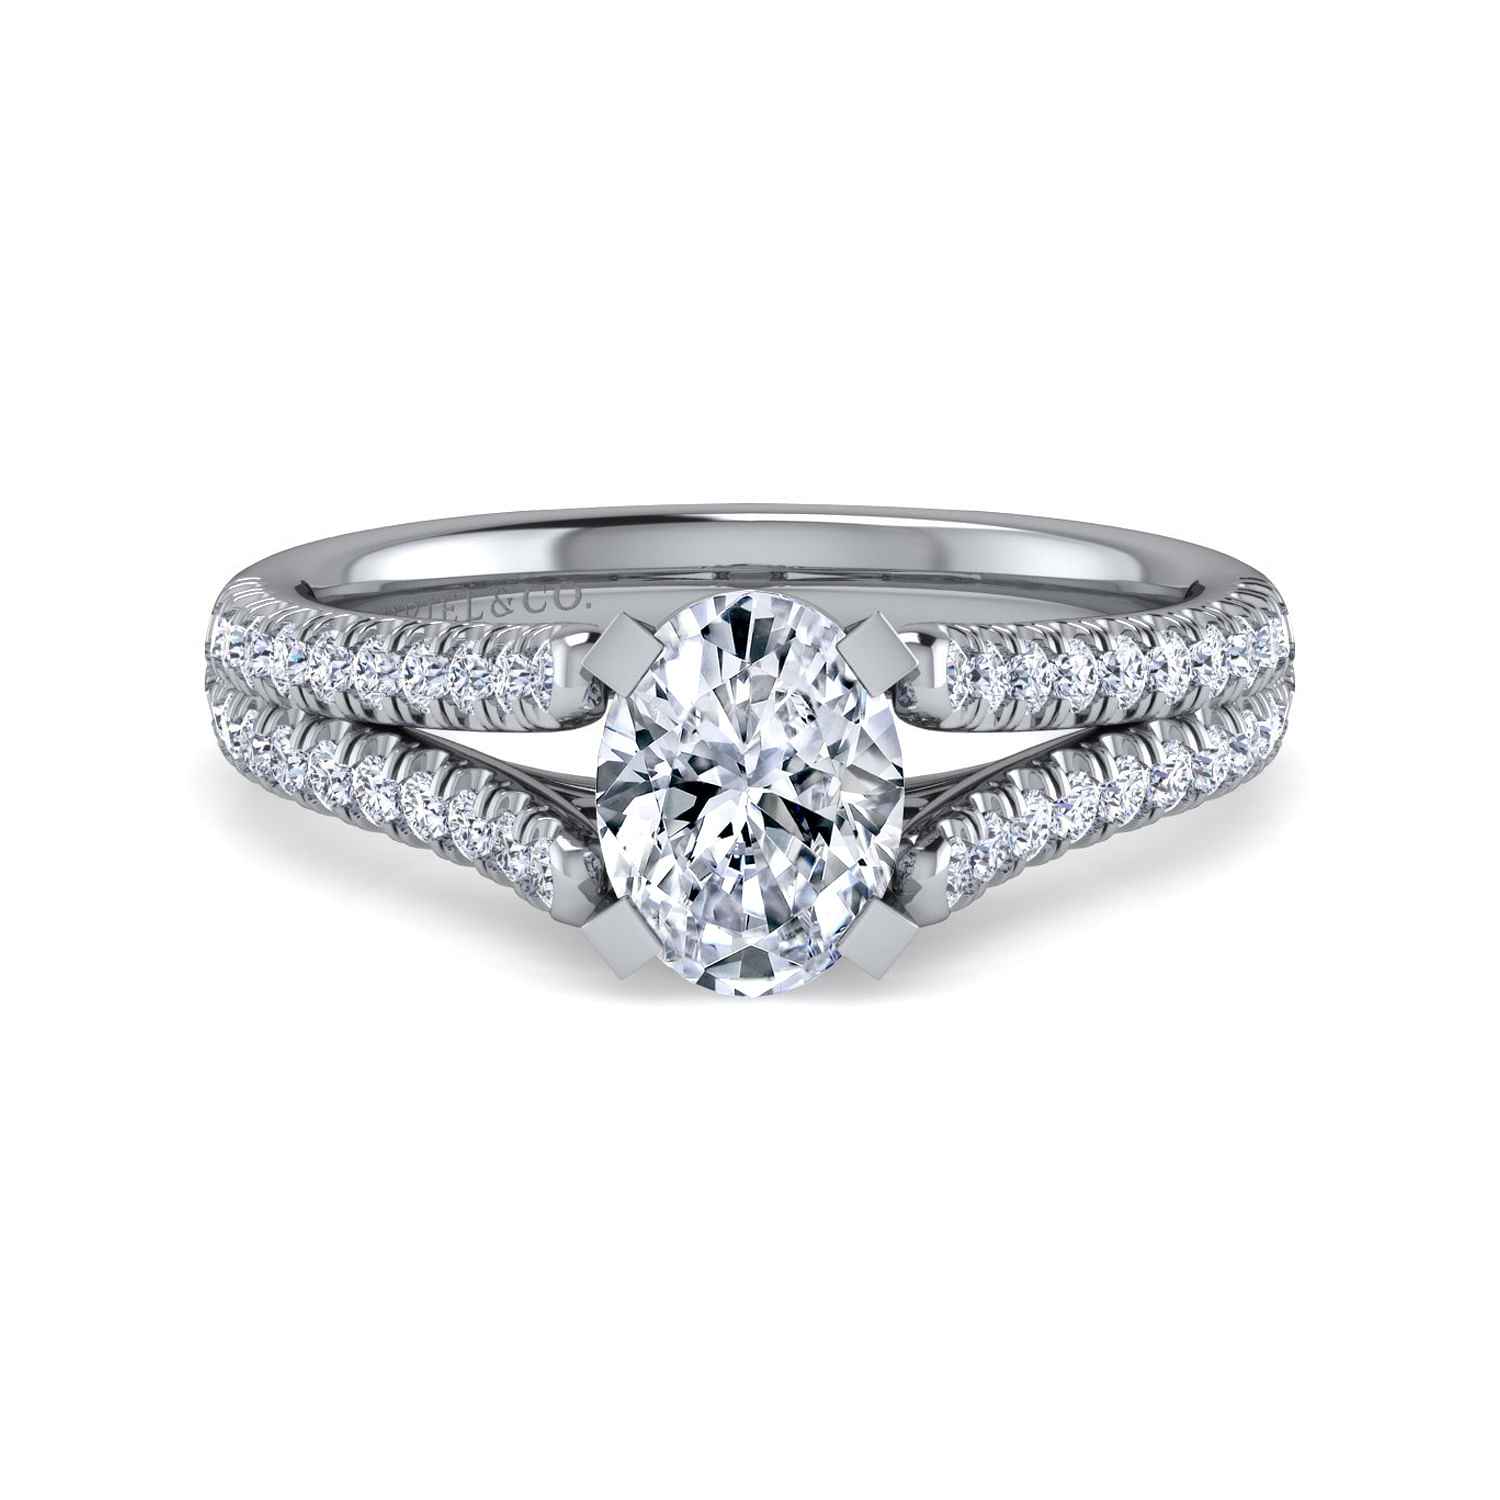 Janelle - 14K White Gold Oval Diamond Engagement Ring